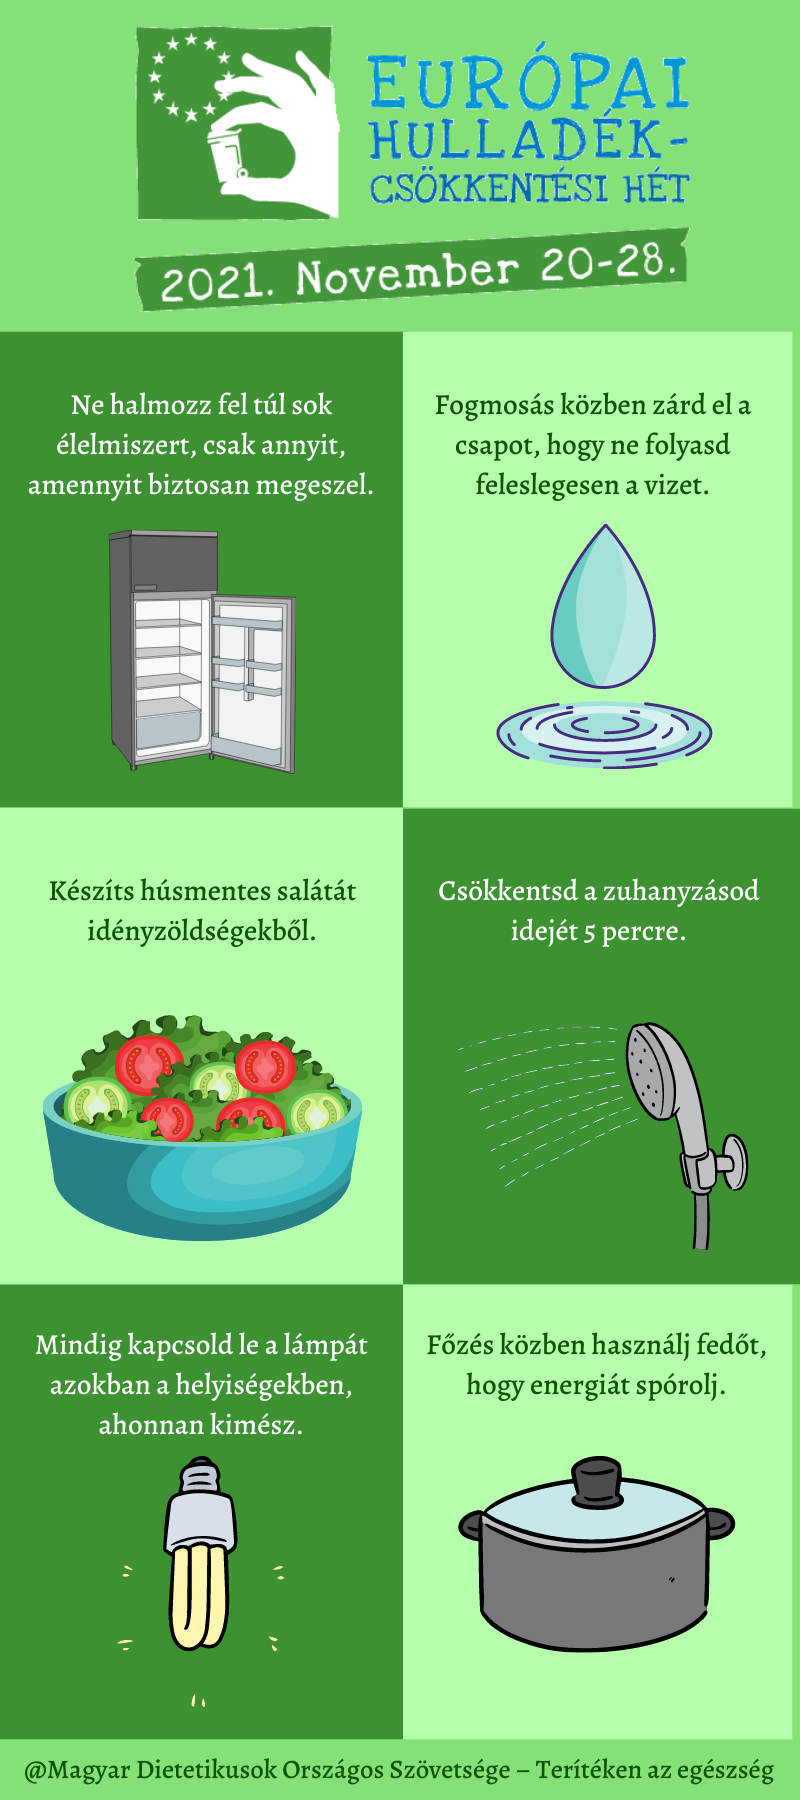 Európai Hulladékcsökkentési Hét 2021. November 20-28. Ne halmozz fel túl sok élelmiszert csak annyit amennyit biztosan megeszel. Fogmosás közben zárd el a csapot, hogy ne folyasd  feleslegesen a vizet. Készíts húsmentes salátát idényzöldségekből. Csökkents a zuhanyzásod idejét 5 percre. Mindig kapcsold le a lámpát azokban a helységekben ahonnan kimész. Főzés közben használj fedőt, hogy energiát spórolj. @Magyar Dietetikusok Országos Szövetsége-Terítéken az egészség